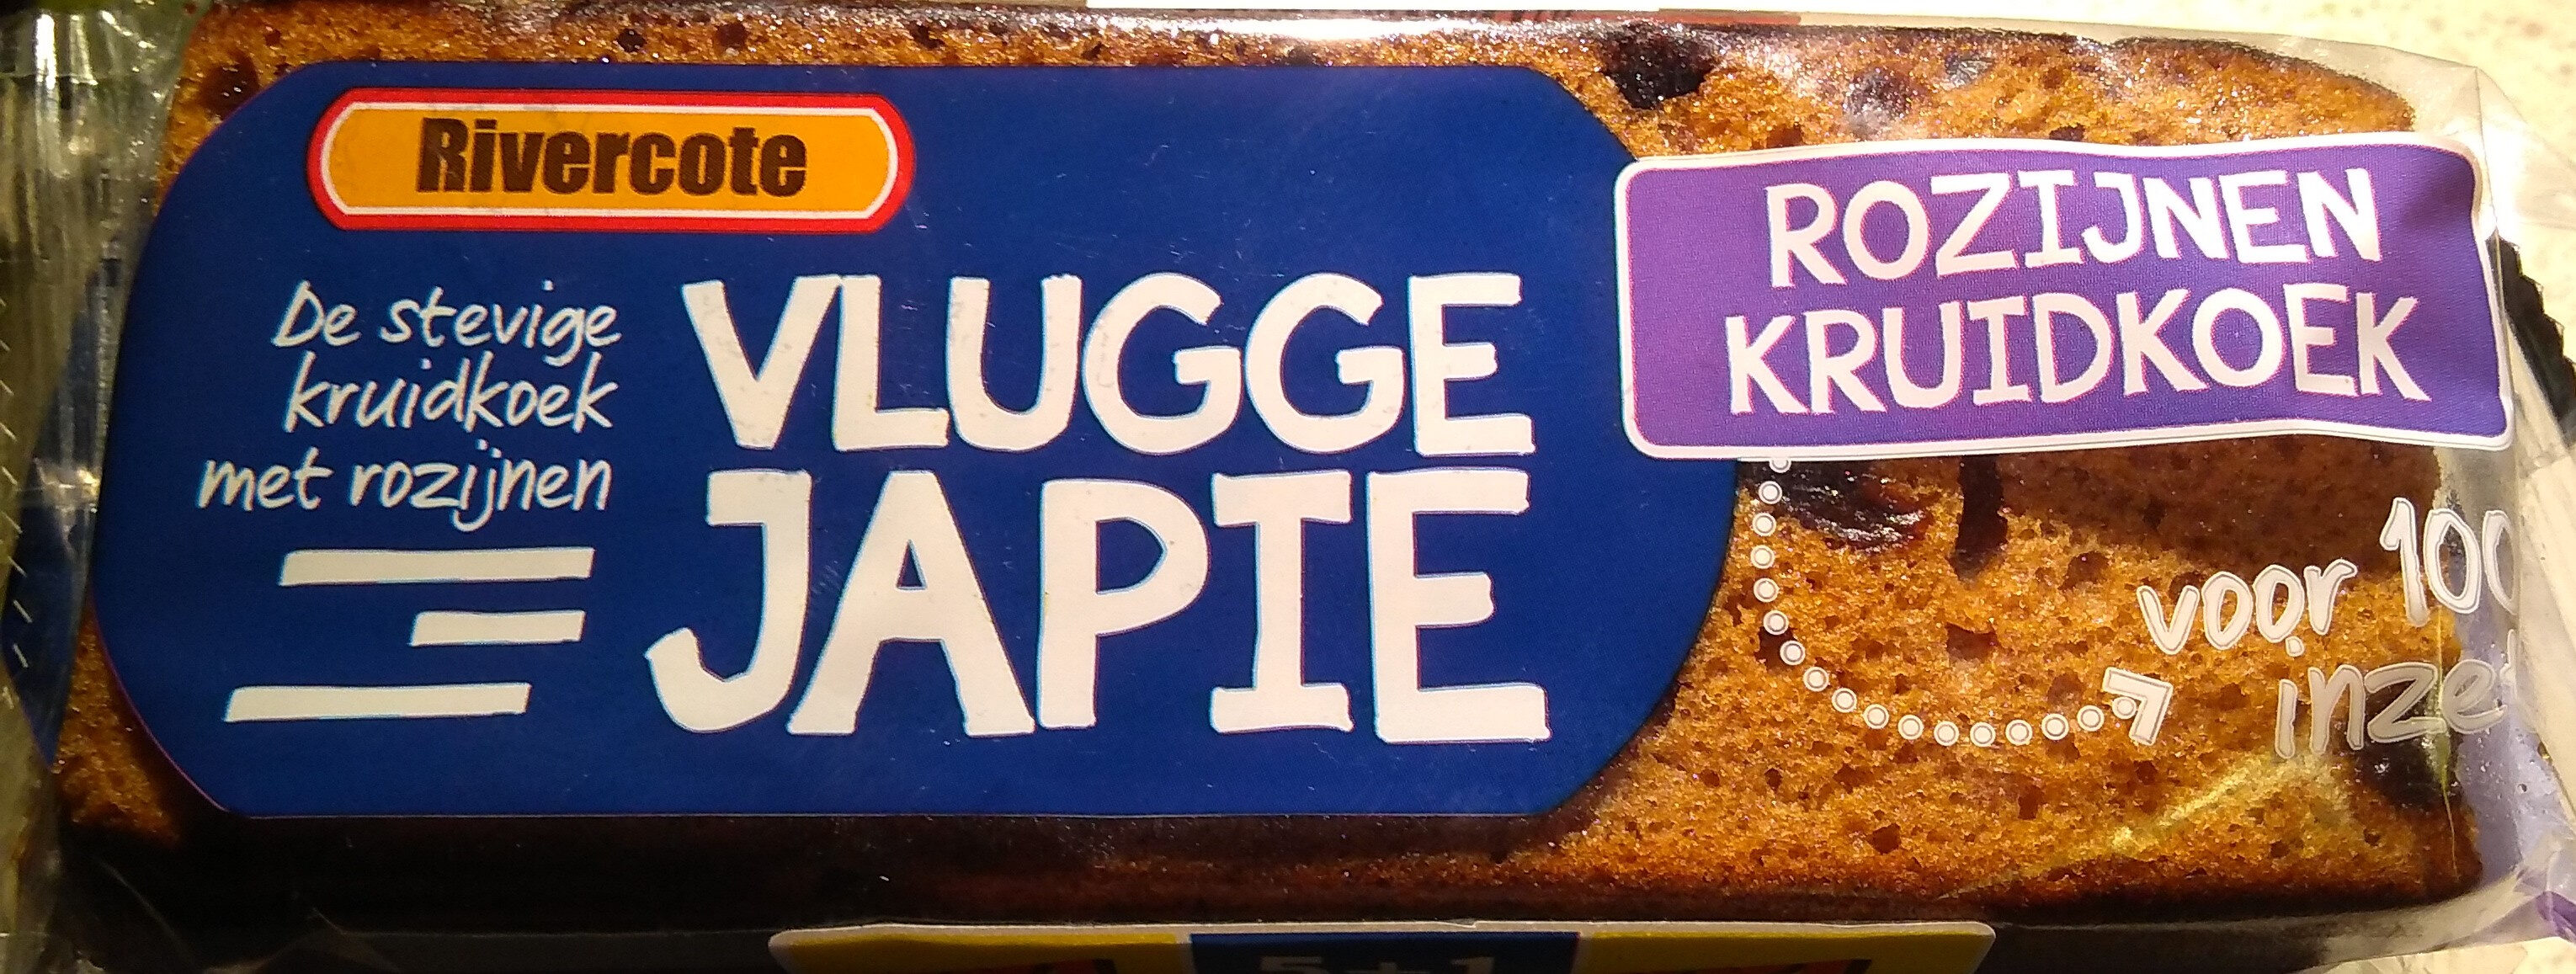 Vlugge Japie - Rozijnen Kruidkoek - Product - nl